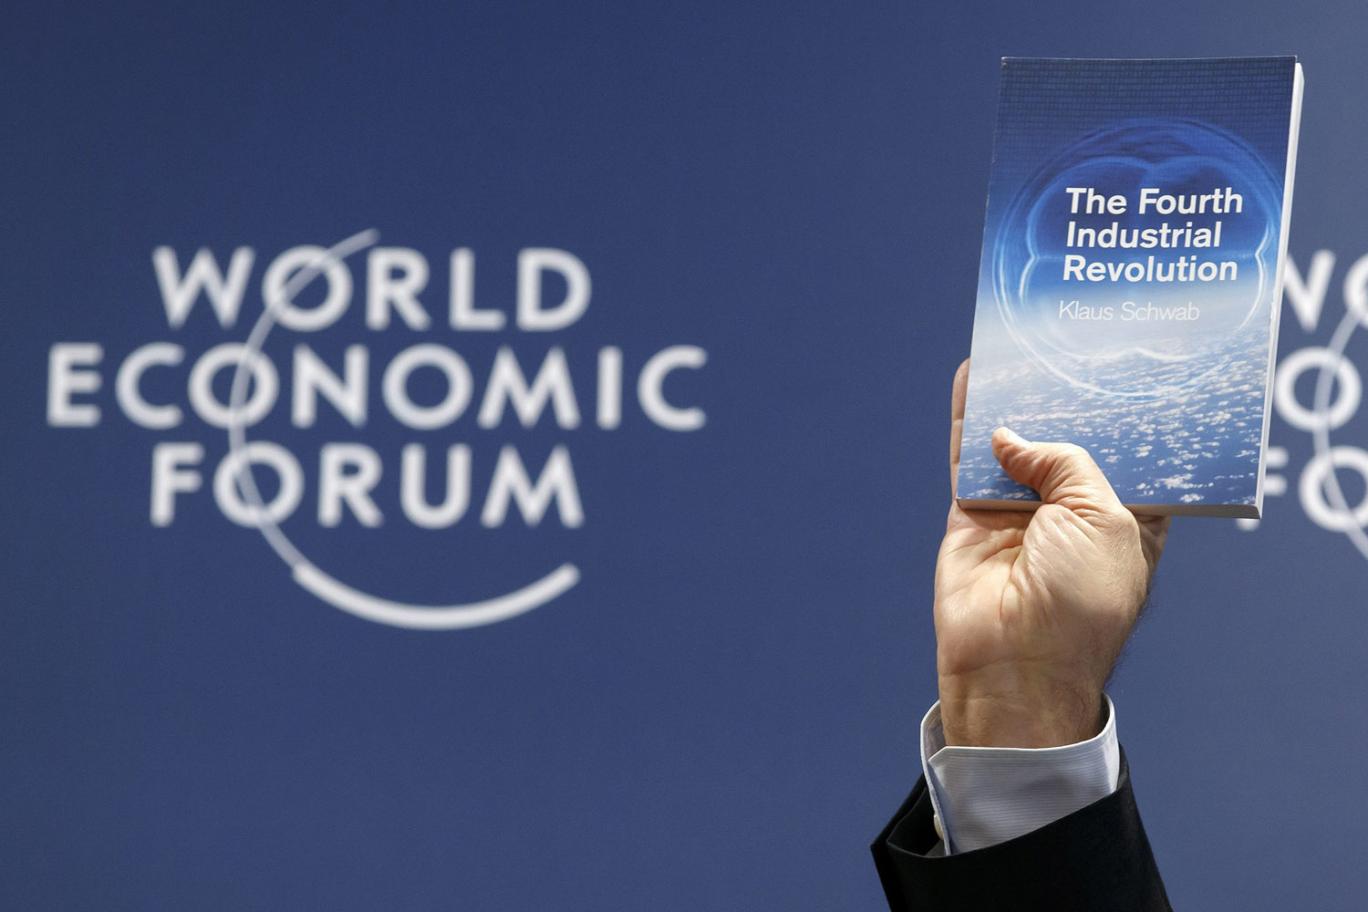 Krize cevap arayan sermayenin Davos’taki gündemi 4. Sanayi Devrimi